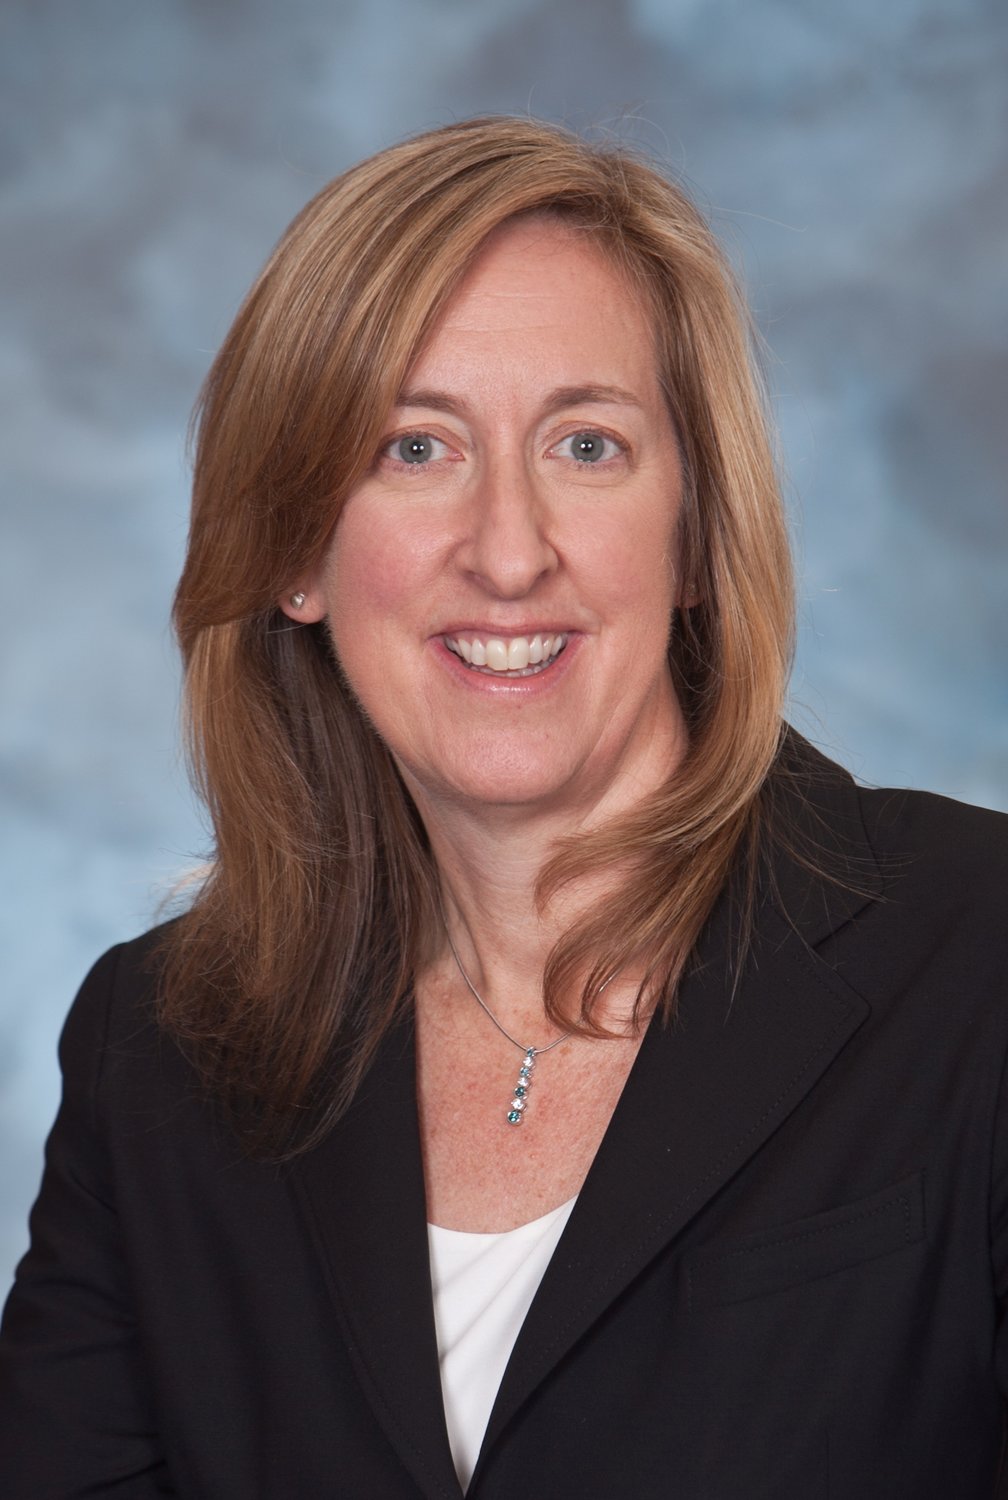 Dr. Sharon Carney